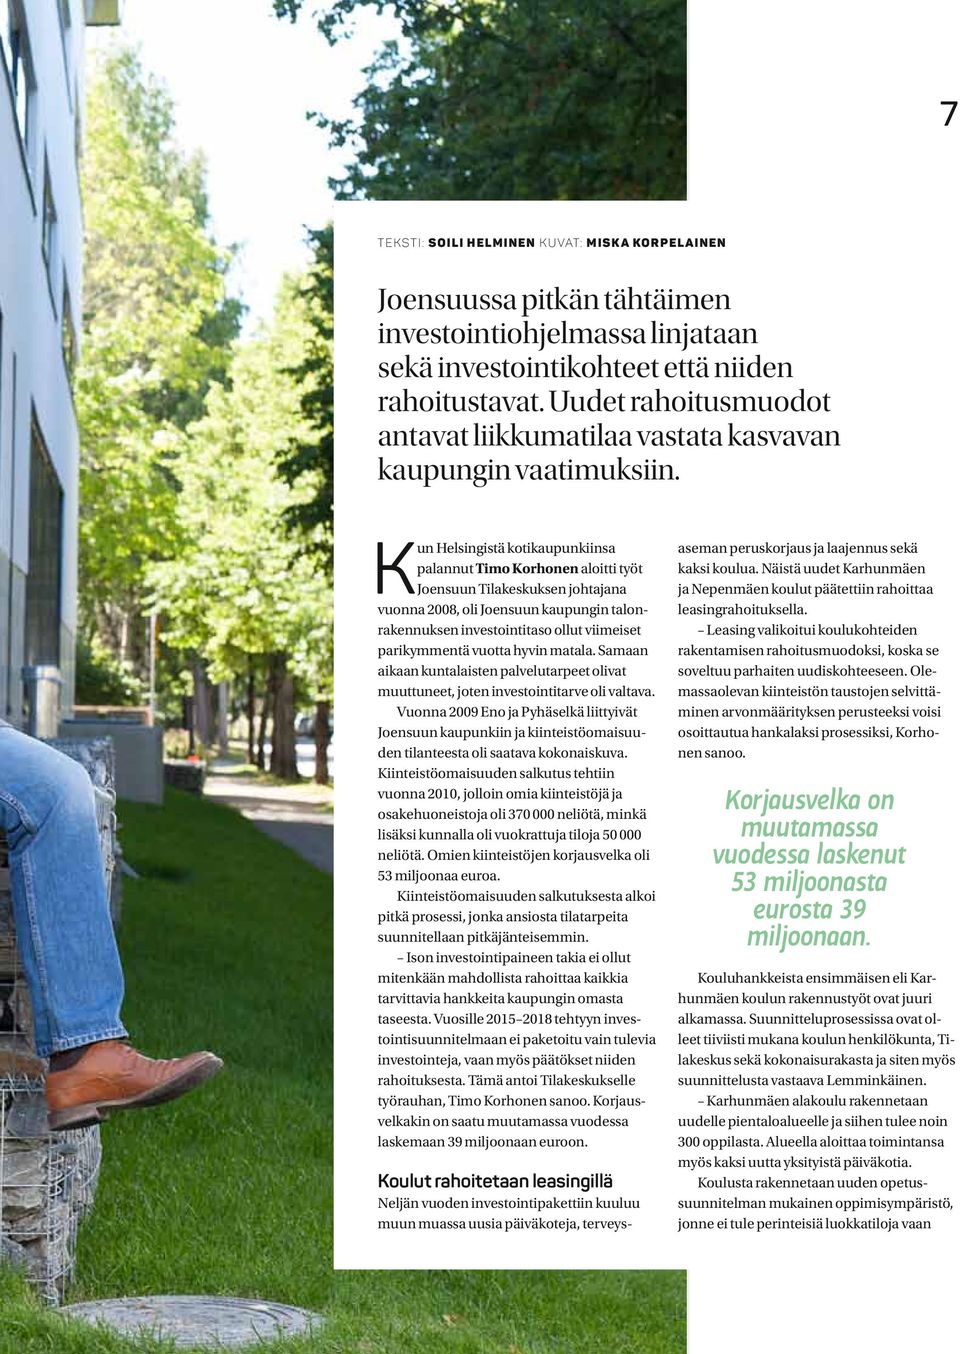 Kun Helsingistä kotikaupunkiinsa palannut Timo Korhonen aloitti työt Joensuun Tilakeskuksen johtajana vuonna 2008, oli Joensuun kaupungin talonrakennuksen investointitaso ollut viimeiset parikymmentä